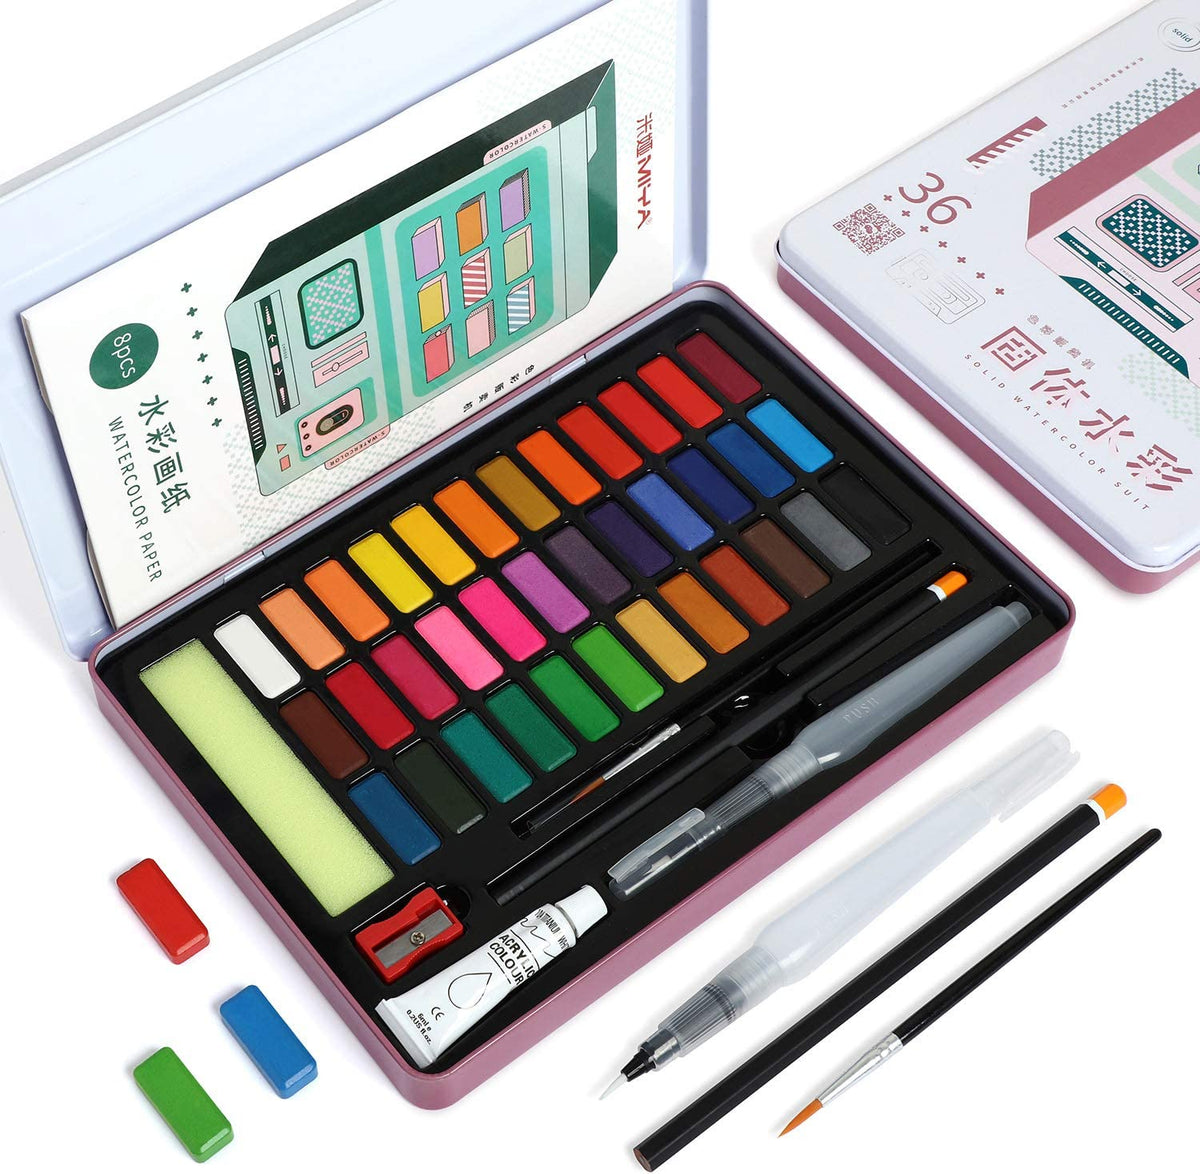 48 Watercolor Paints Set, Art Supplies Portable Watercolor Paint Kit - 2 Refillable Special Water Brush Pens, Sponge and Watercolor Palette